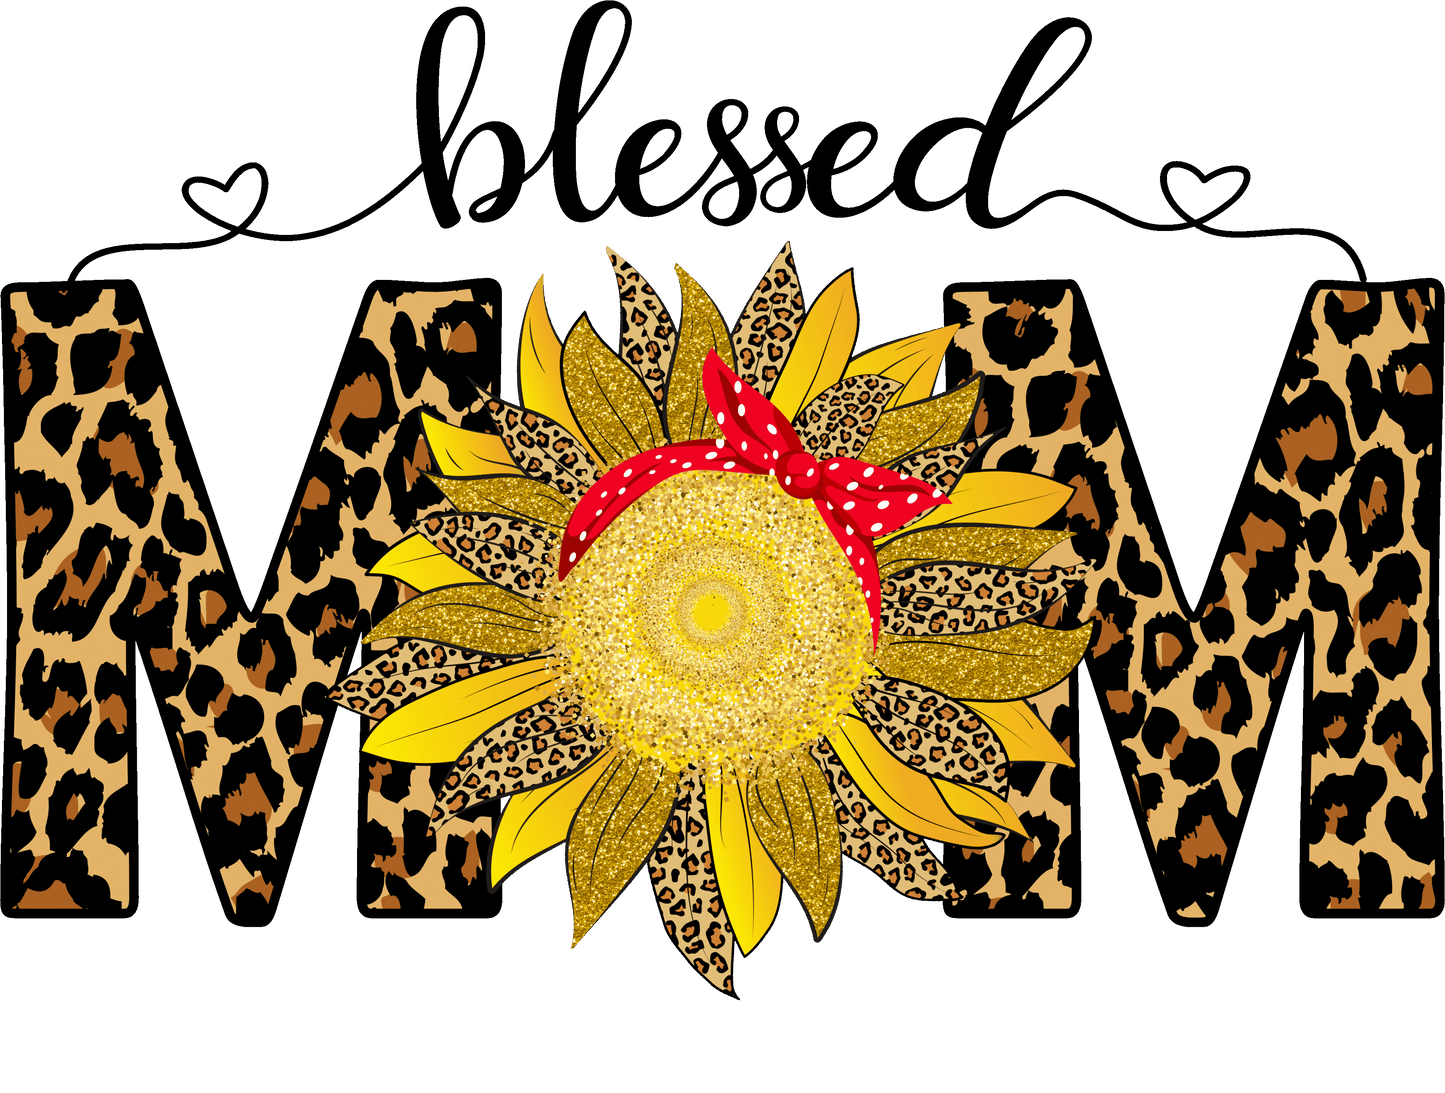 Blessed Mom Sunflower Bandana Design Transfer